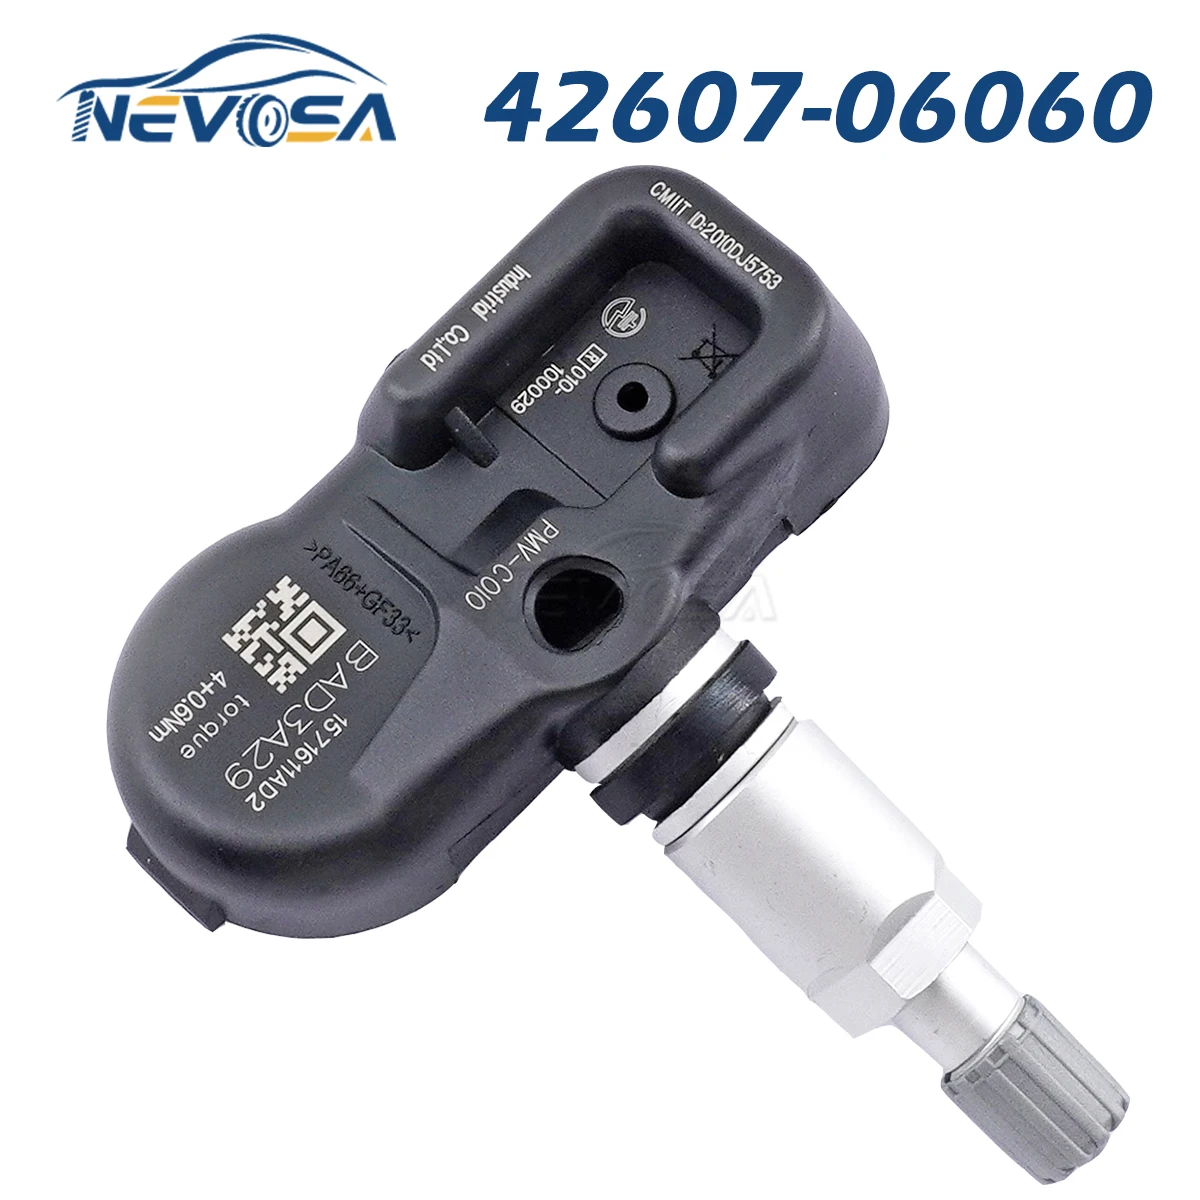 

Nevosa 42607-06060 TPMS Sensor For Toyota Camry Corolla Avalon Rav-4 Prius V Lexus RC300 RC350 RCF NX300h ES350 Scion iM 315MHz